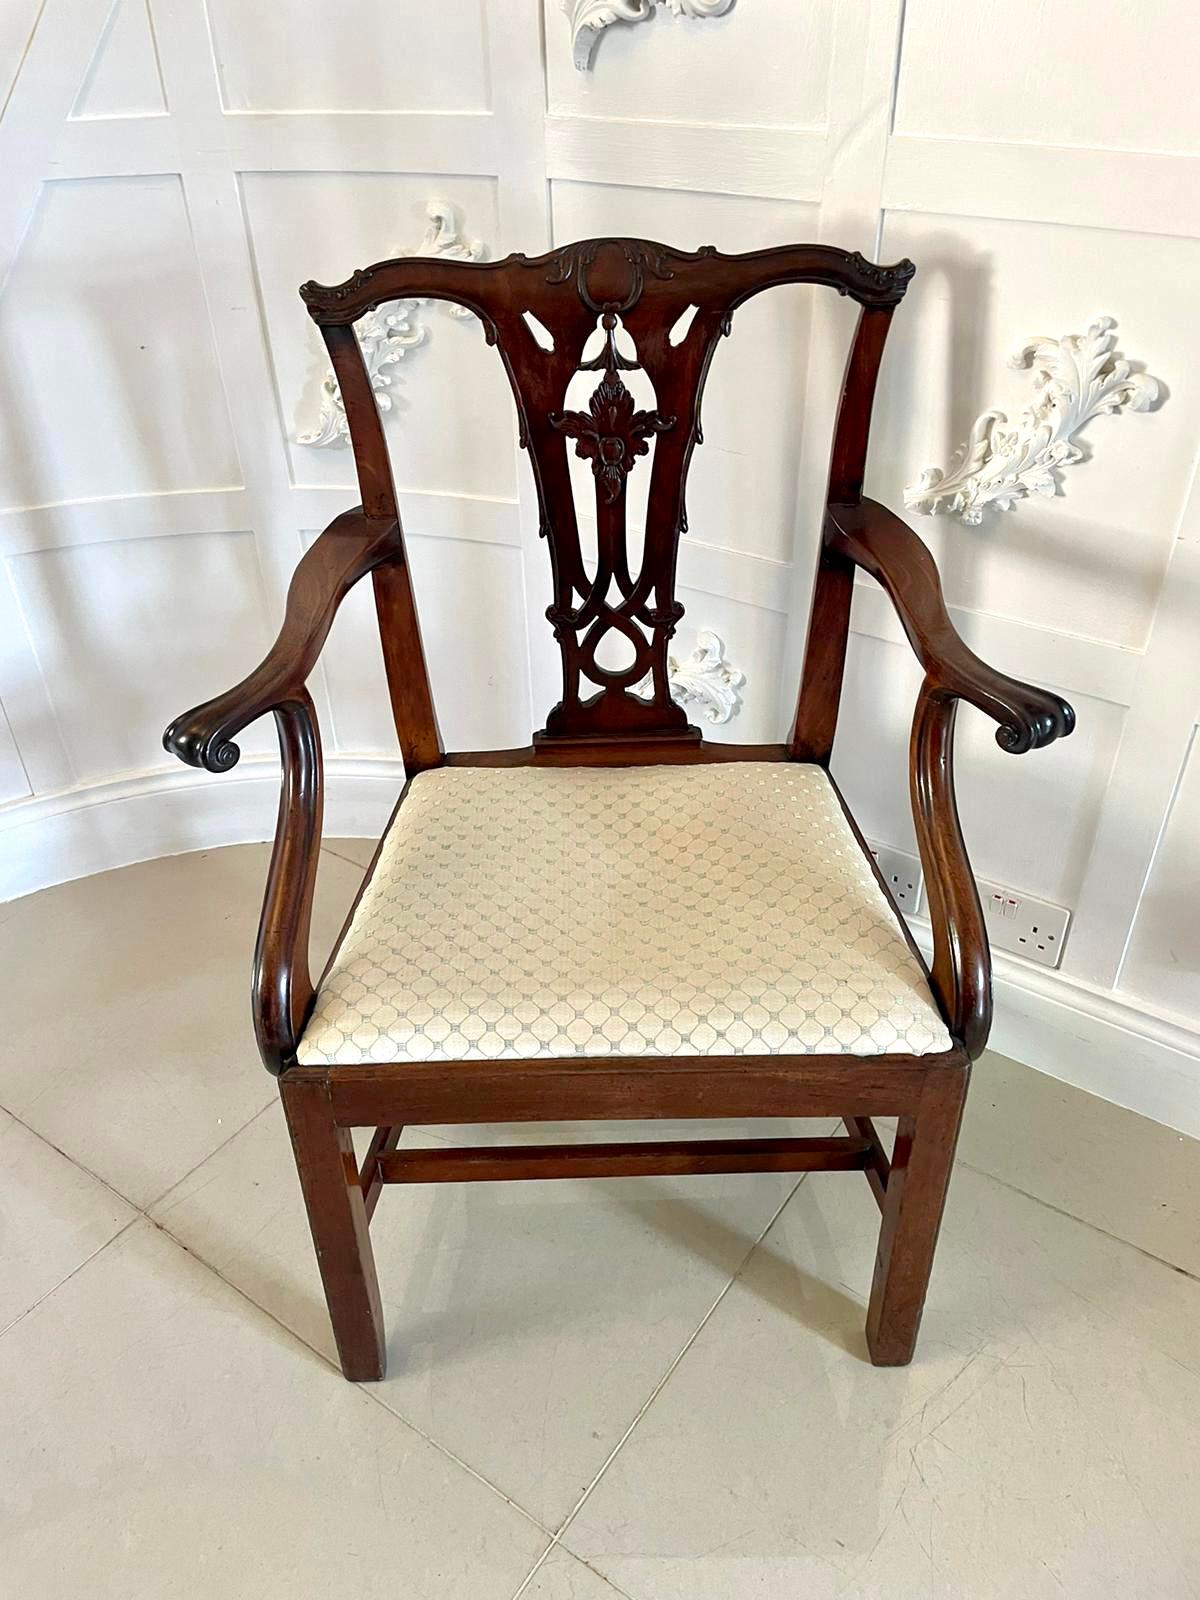 Antike George III geschnitzt Mahagoni Ellenbogen / Schreibtisch Stuhl mit einem wunderbaren geformten geschnitzten oben und Schiene mit offenen Gitterwerk Spleiß und geformte offene Arme, neu gepolstert Drop in Sitz. Es steht auf eleganten,